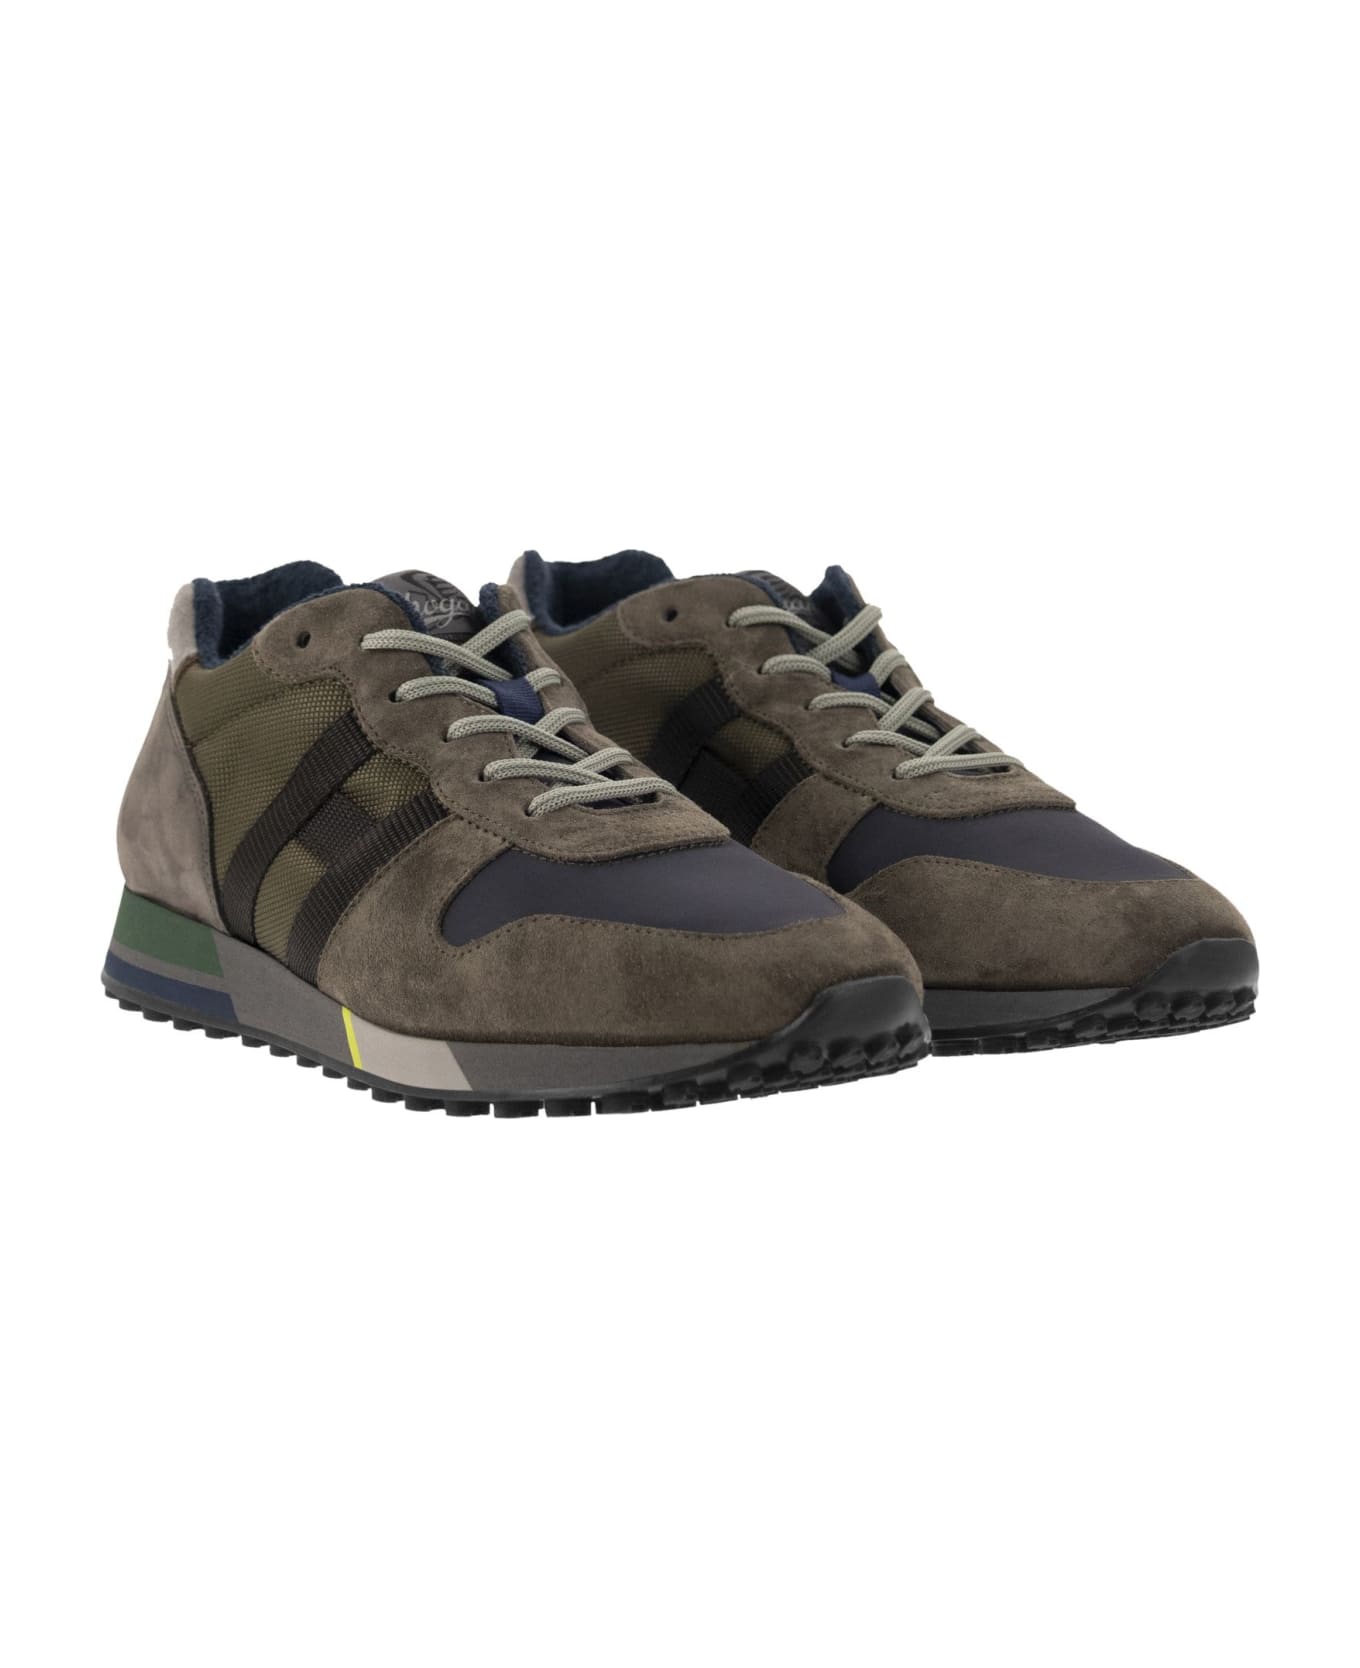 Hogan Sneakers - Military Green